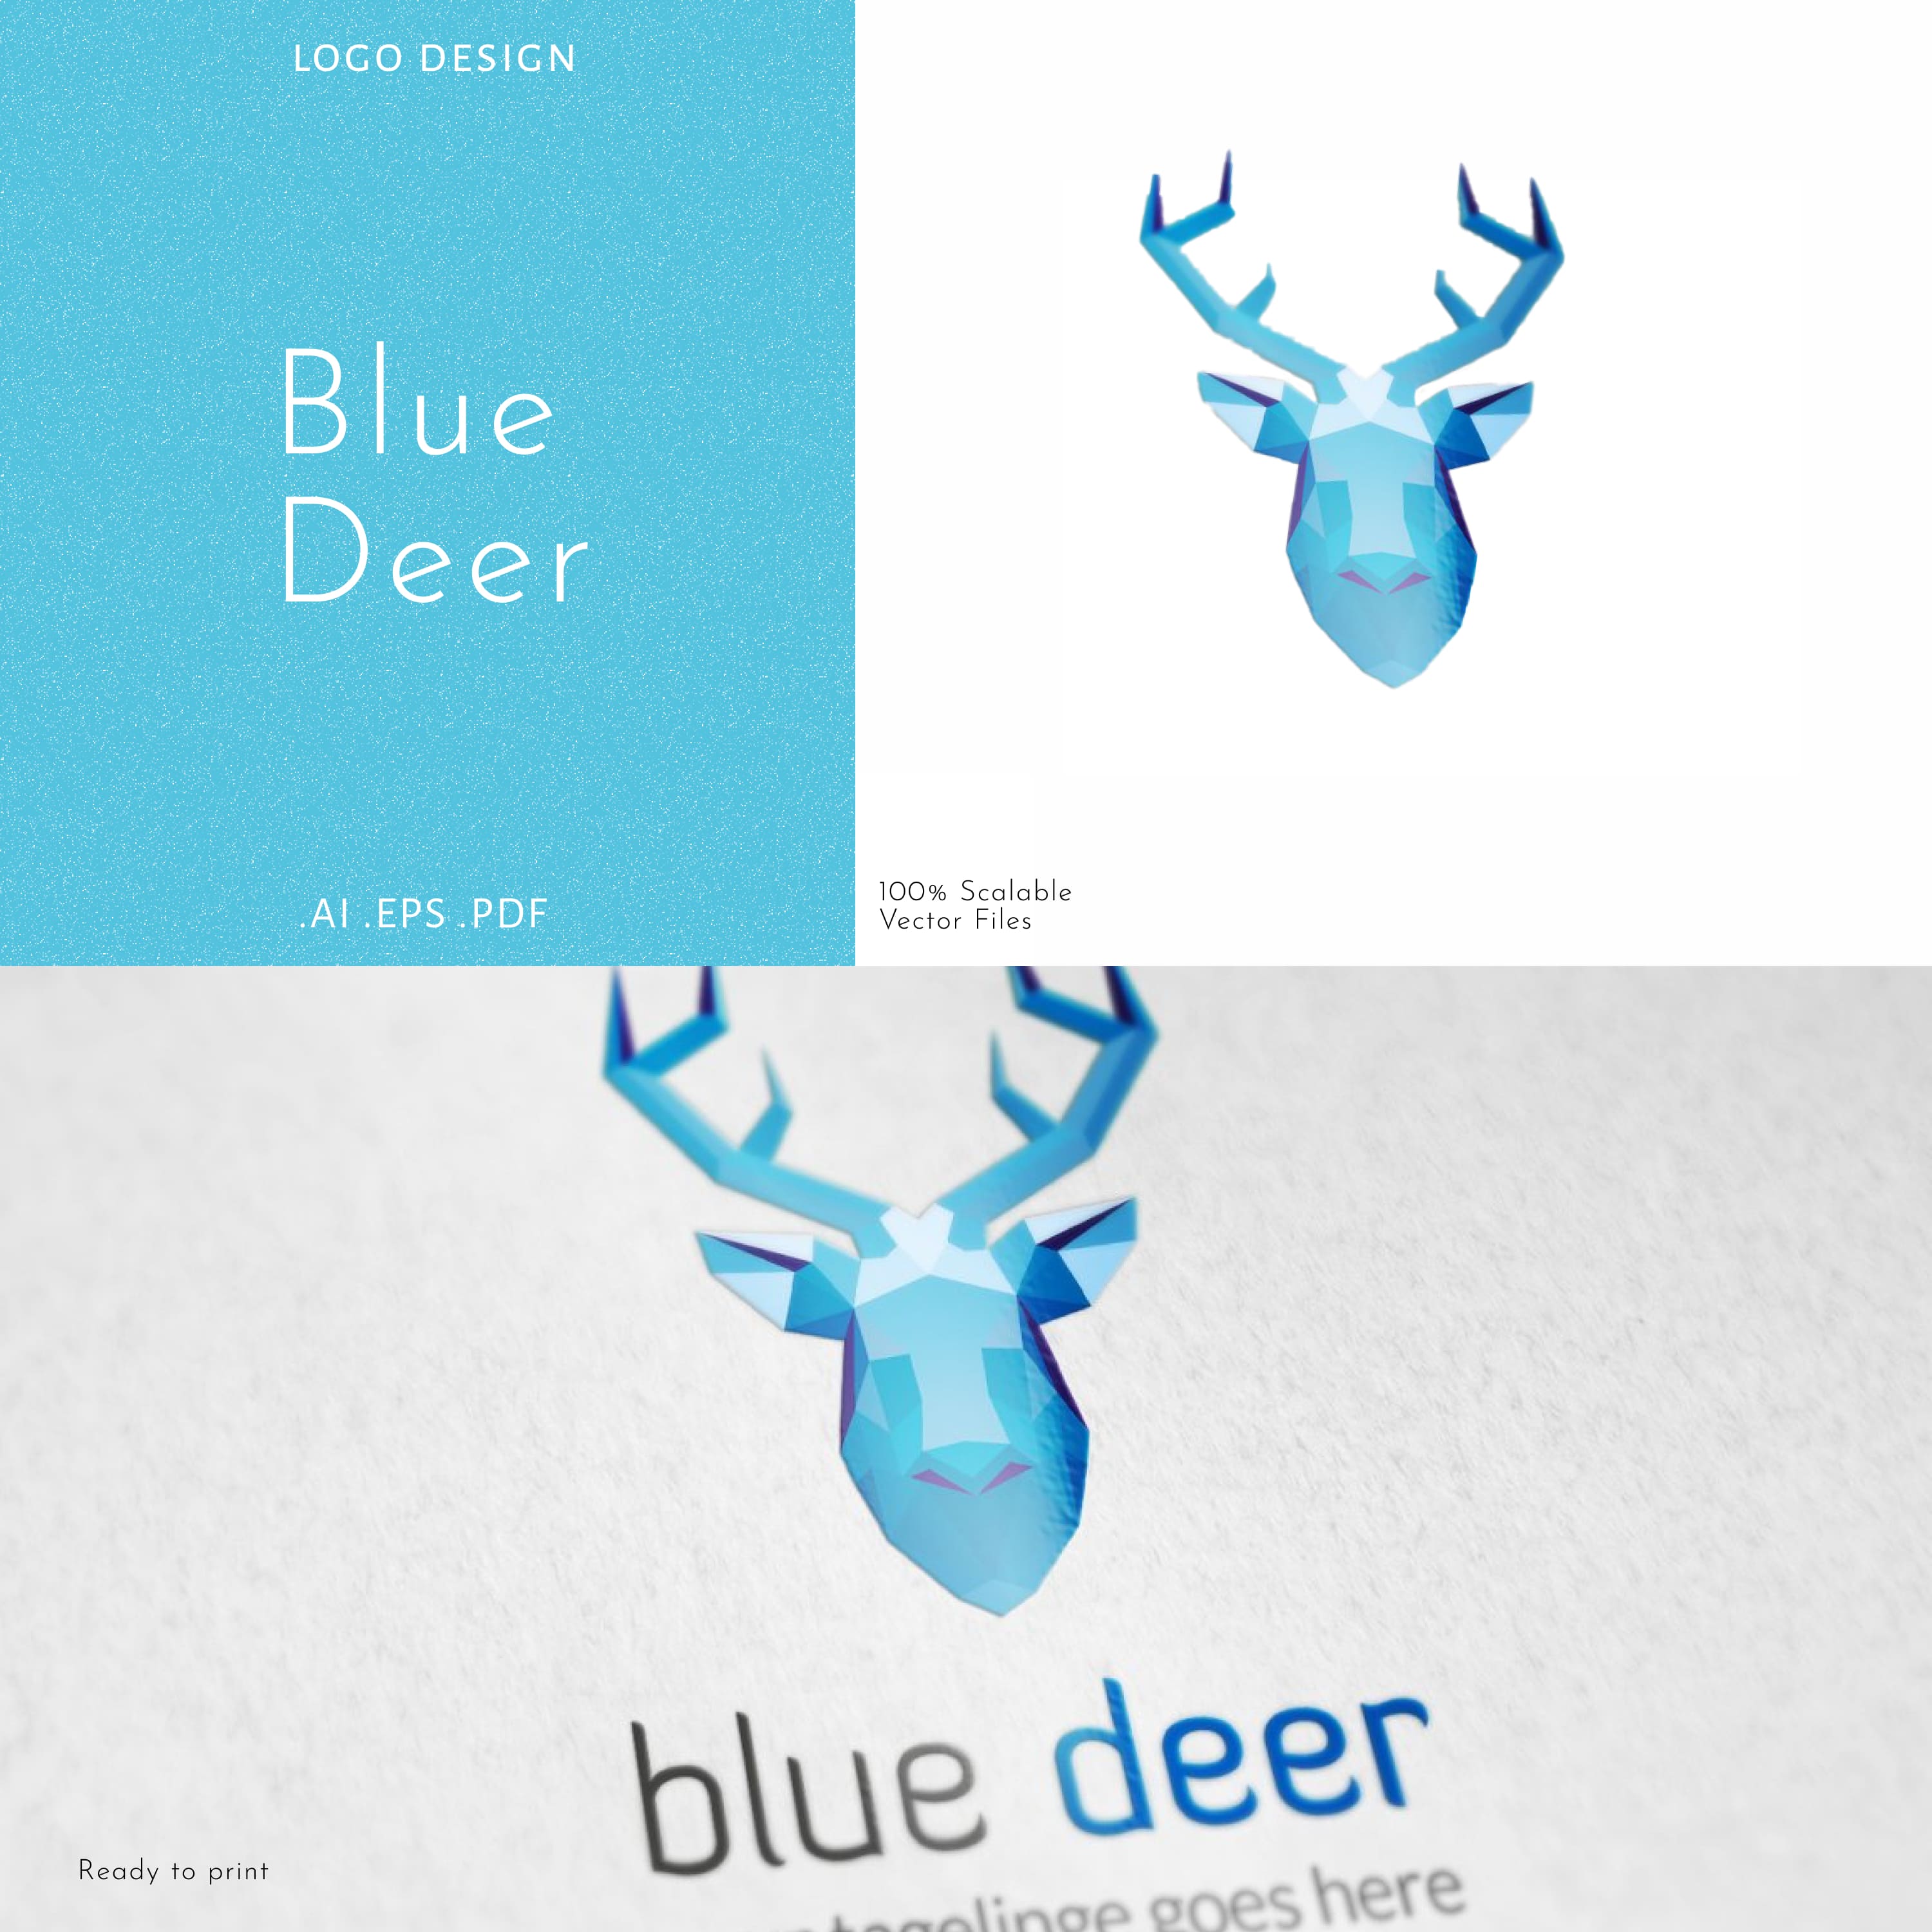 Blue Deer logo cover.